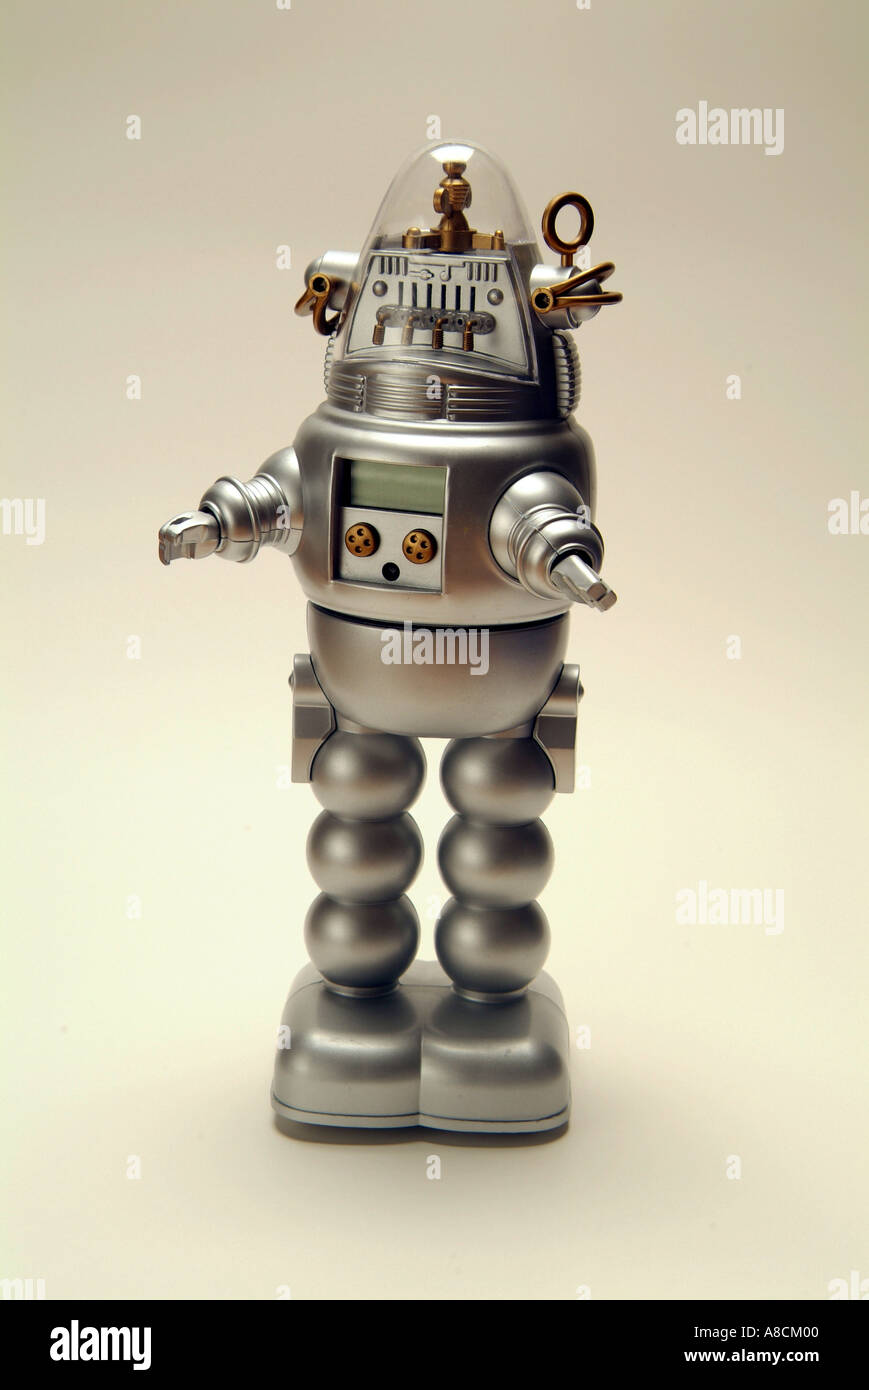 Kinder- kunststoff Spielzeug Roboter im futuristischen Stil von Robby der  Roboter aus Film Forbidden Planet Stockfotografie - Alamy